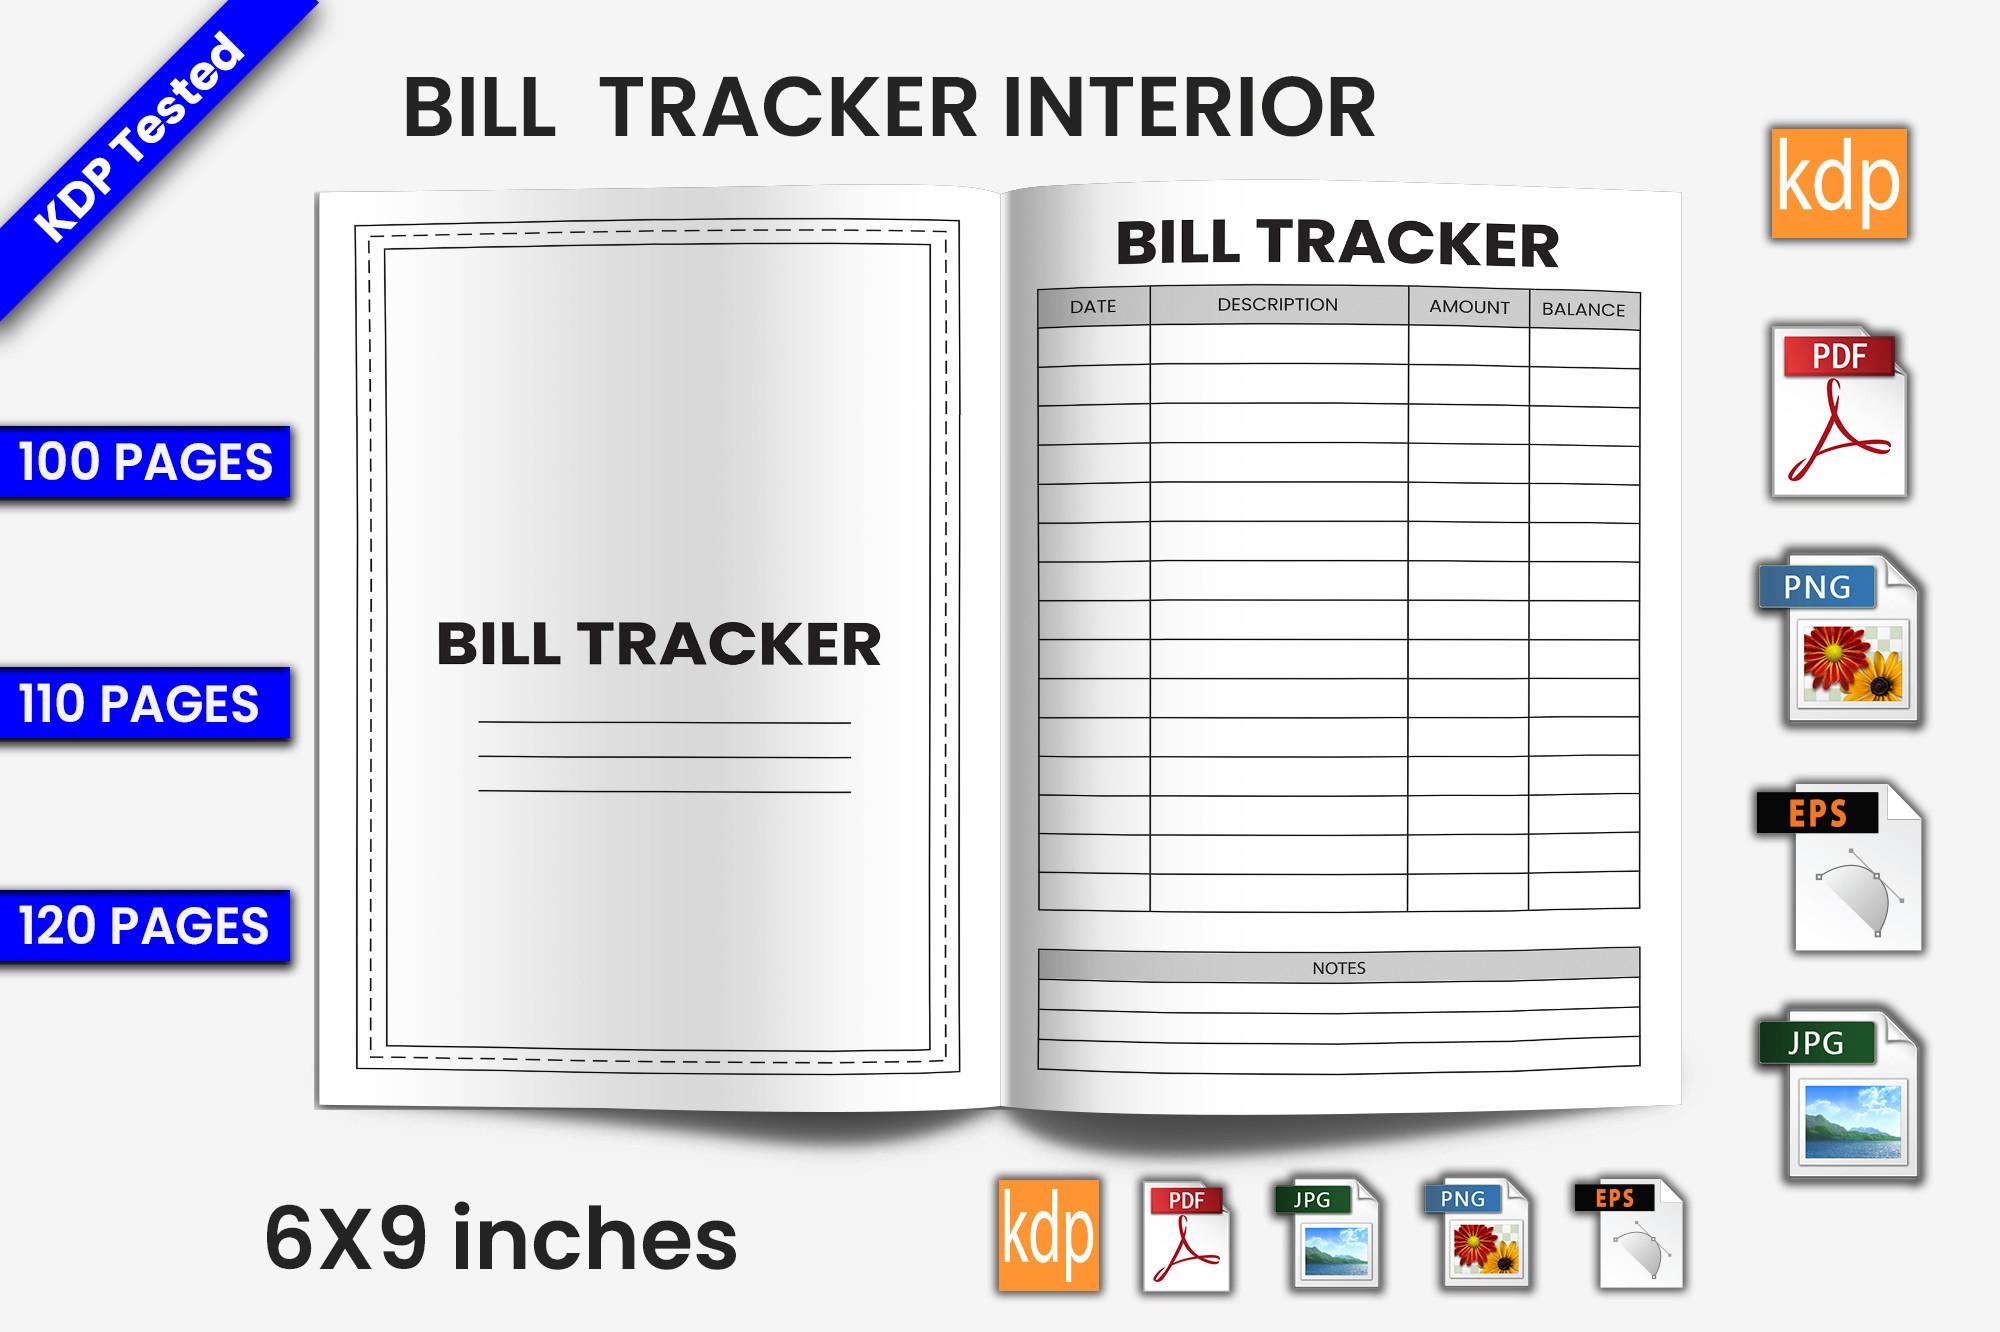 Bill Tracker Log Book | KDP Interior